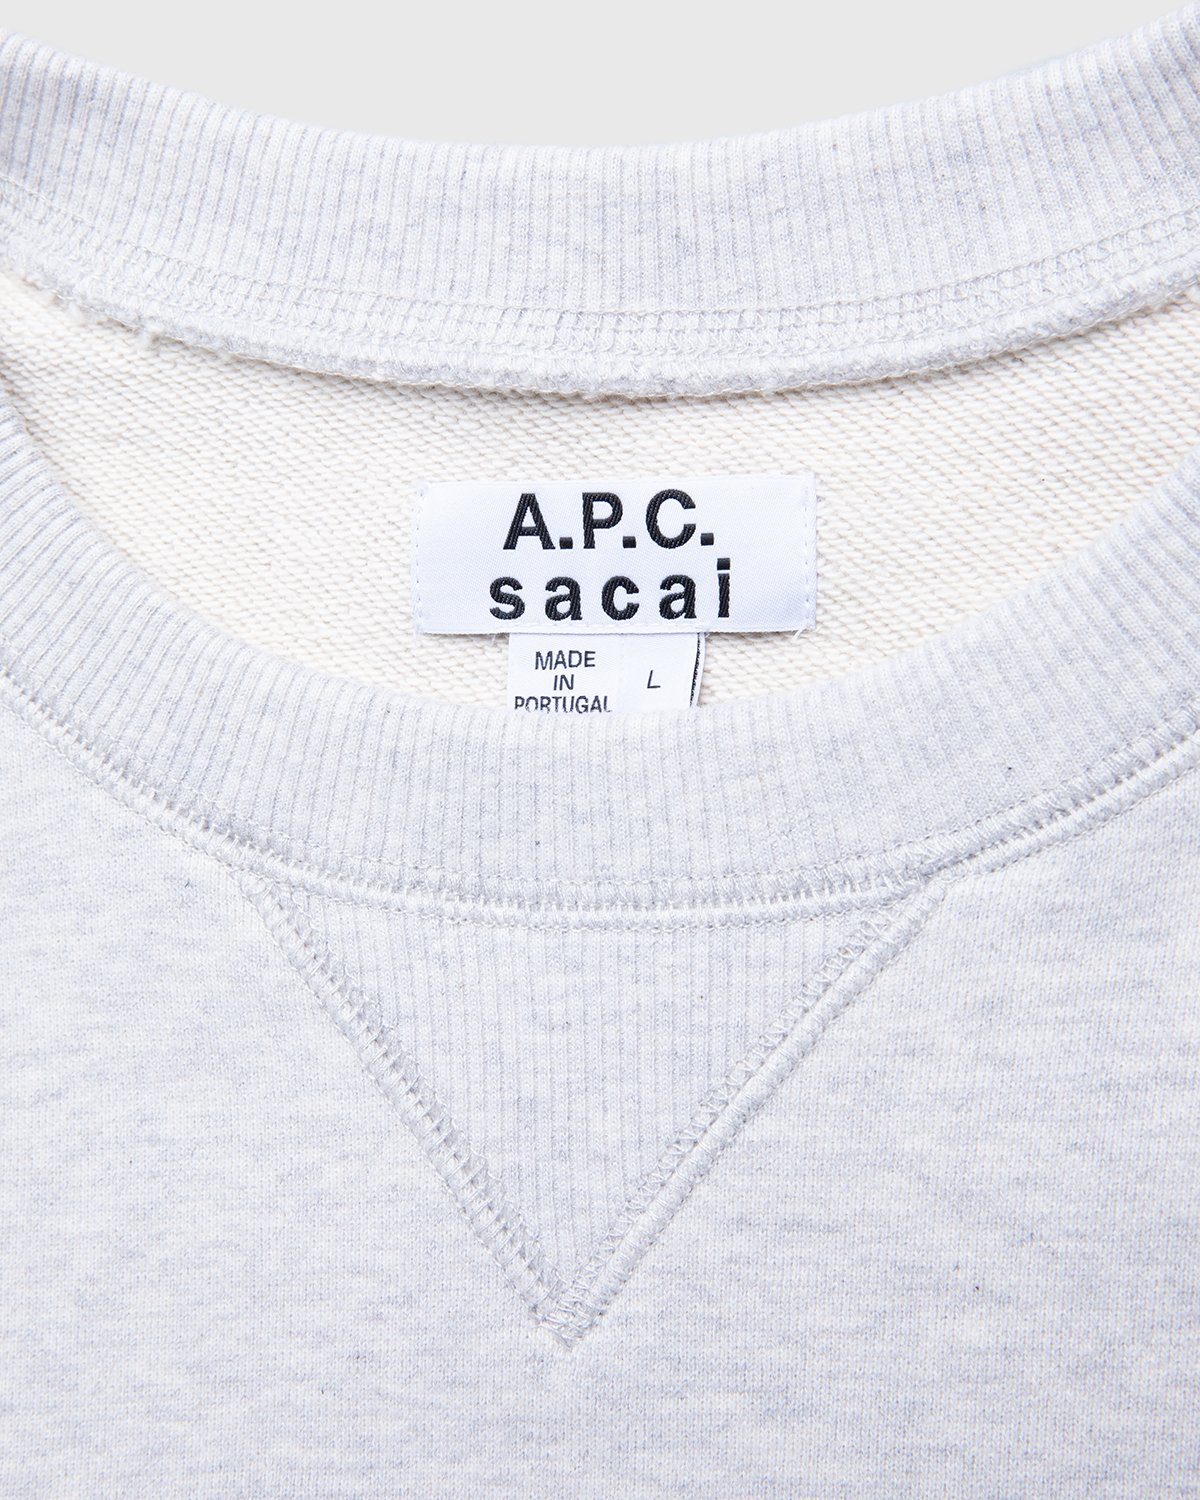 A.P.C. x Sacai - Tani Sweater Light Grey - Clothing - Grey - Image 4